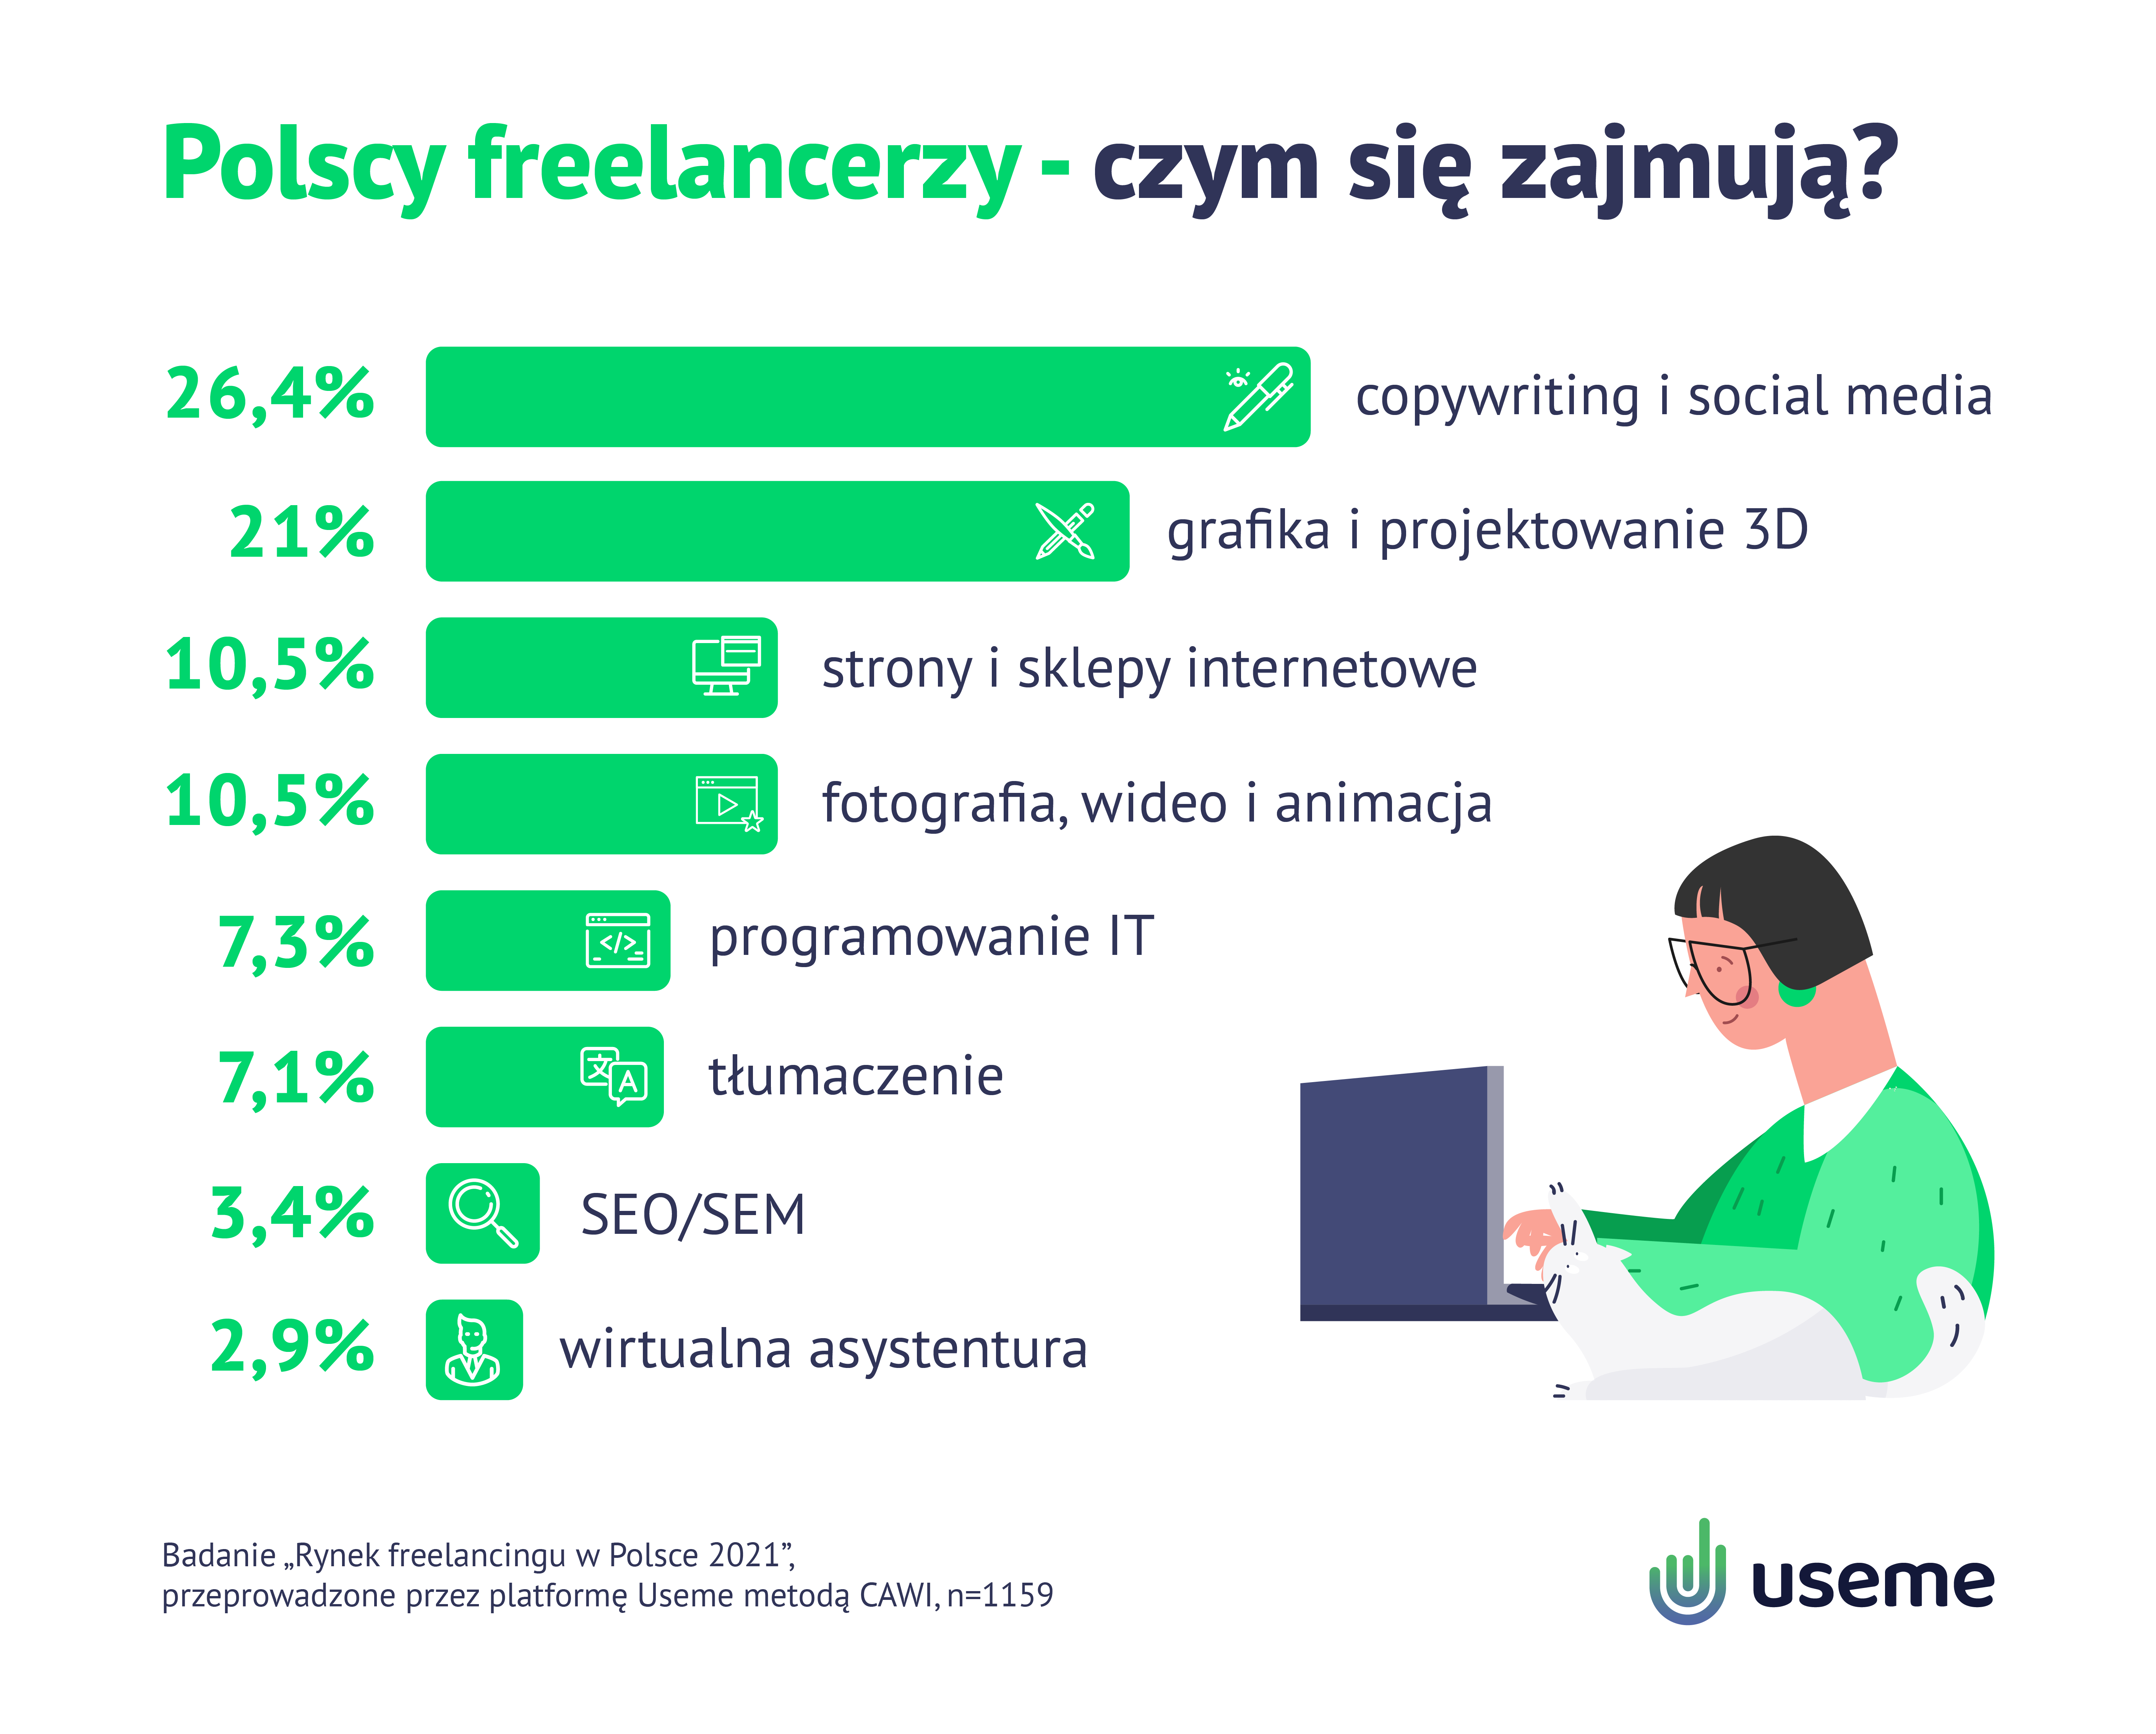 Ile zarabiają freelancerzy? - wykres, czym się zajmują freelancerzy